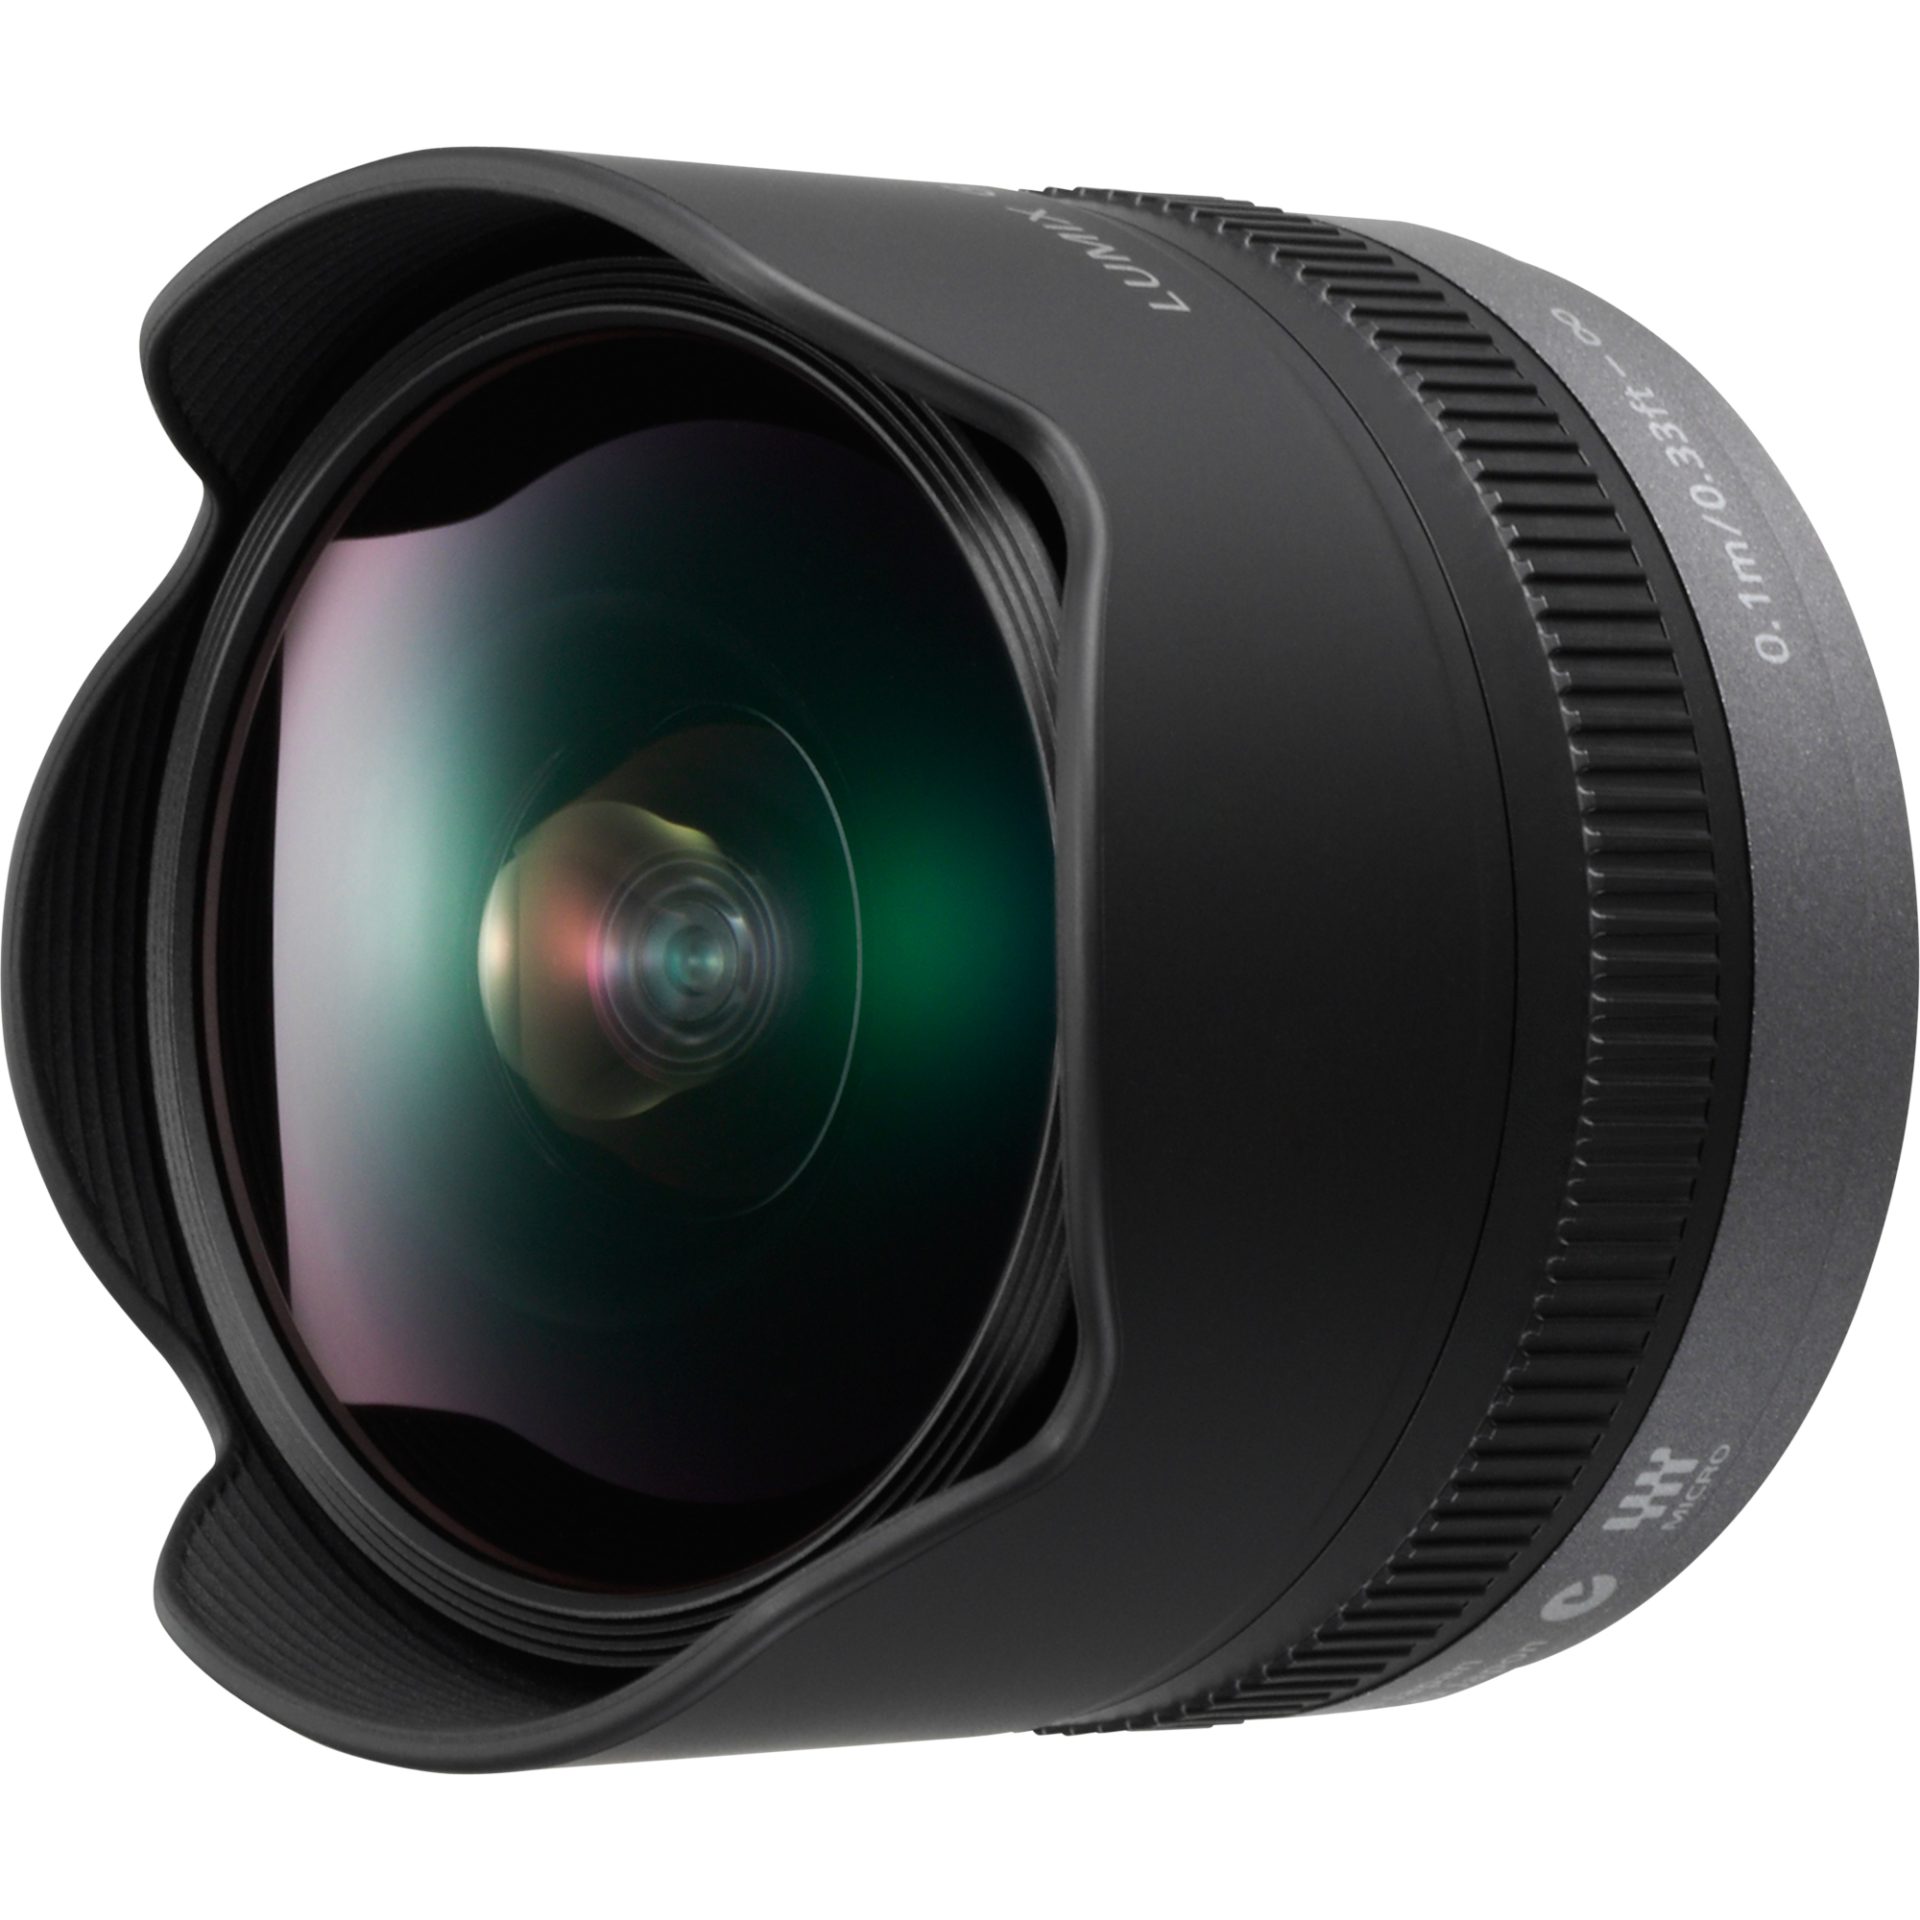 Panasonic H-F008 LUMIX G FISHEYE objektiv typu rybí oko (8mm, F3.5, micro 4/3, pozorovací úhel 180°, ED objektiv), černá